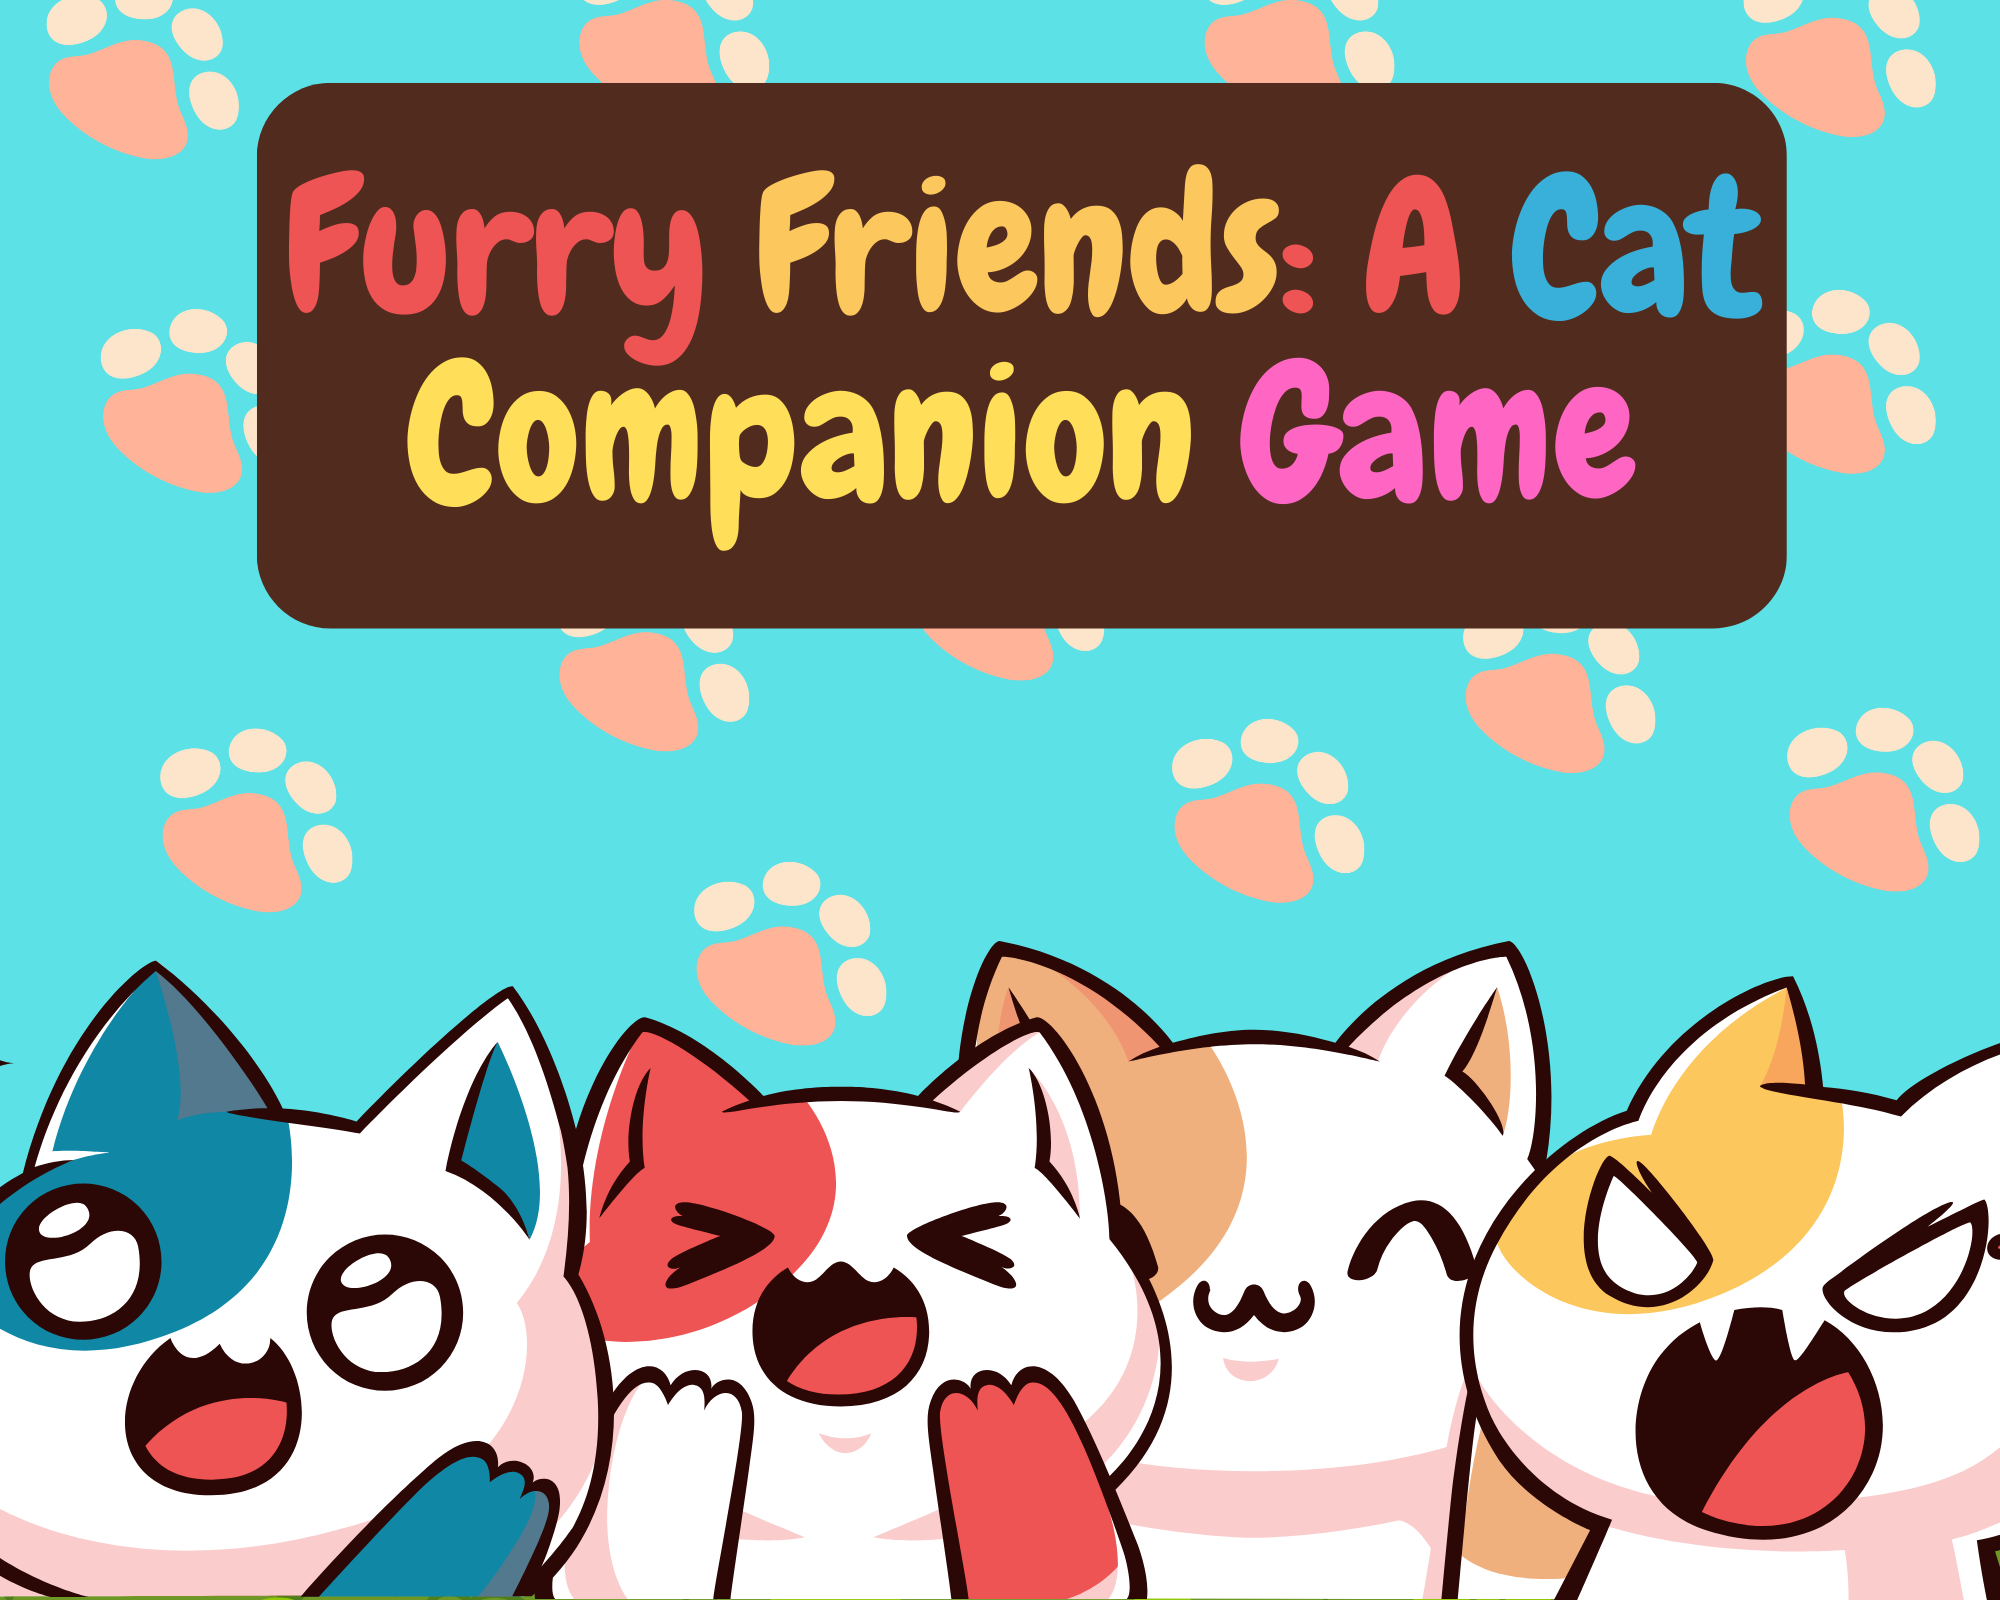 Furry Friends: A Cat Companion Game